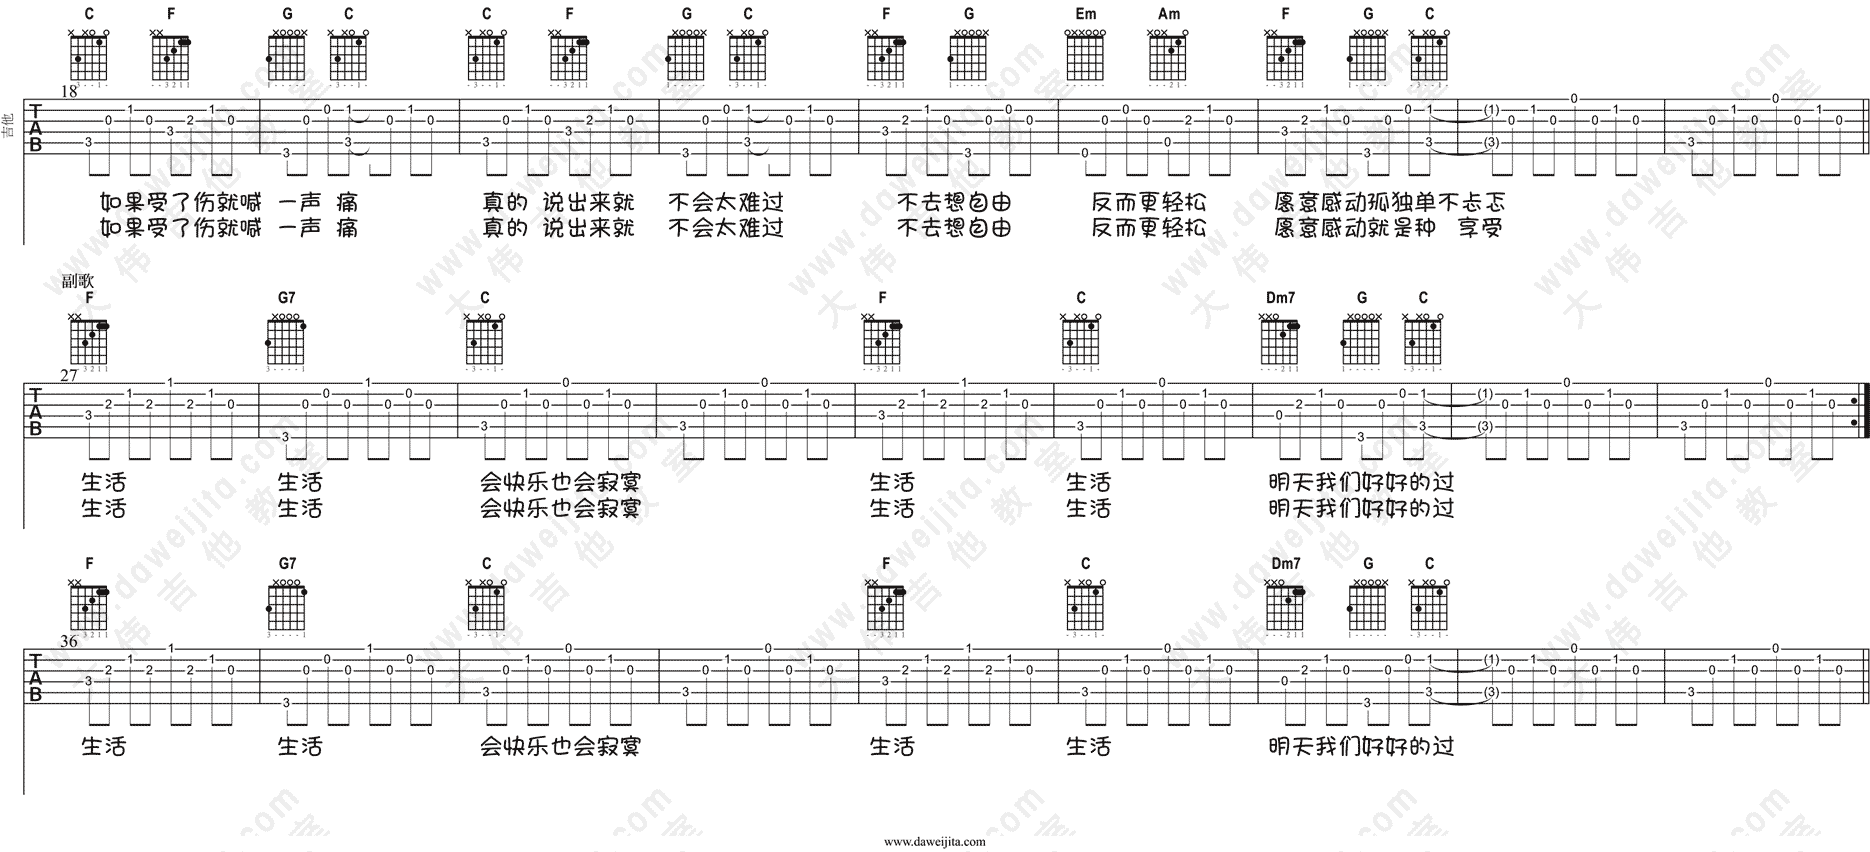 张悬 - 喜欢(小丽学吉他 第十二课) [大伟吉他 弹唱 小丽学吉他 教学] 吉他谱